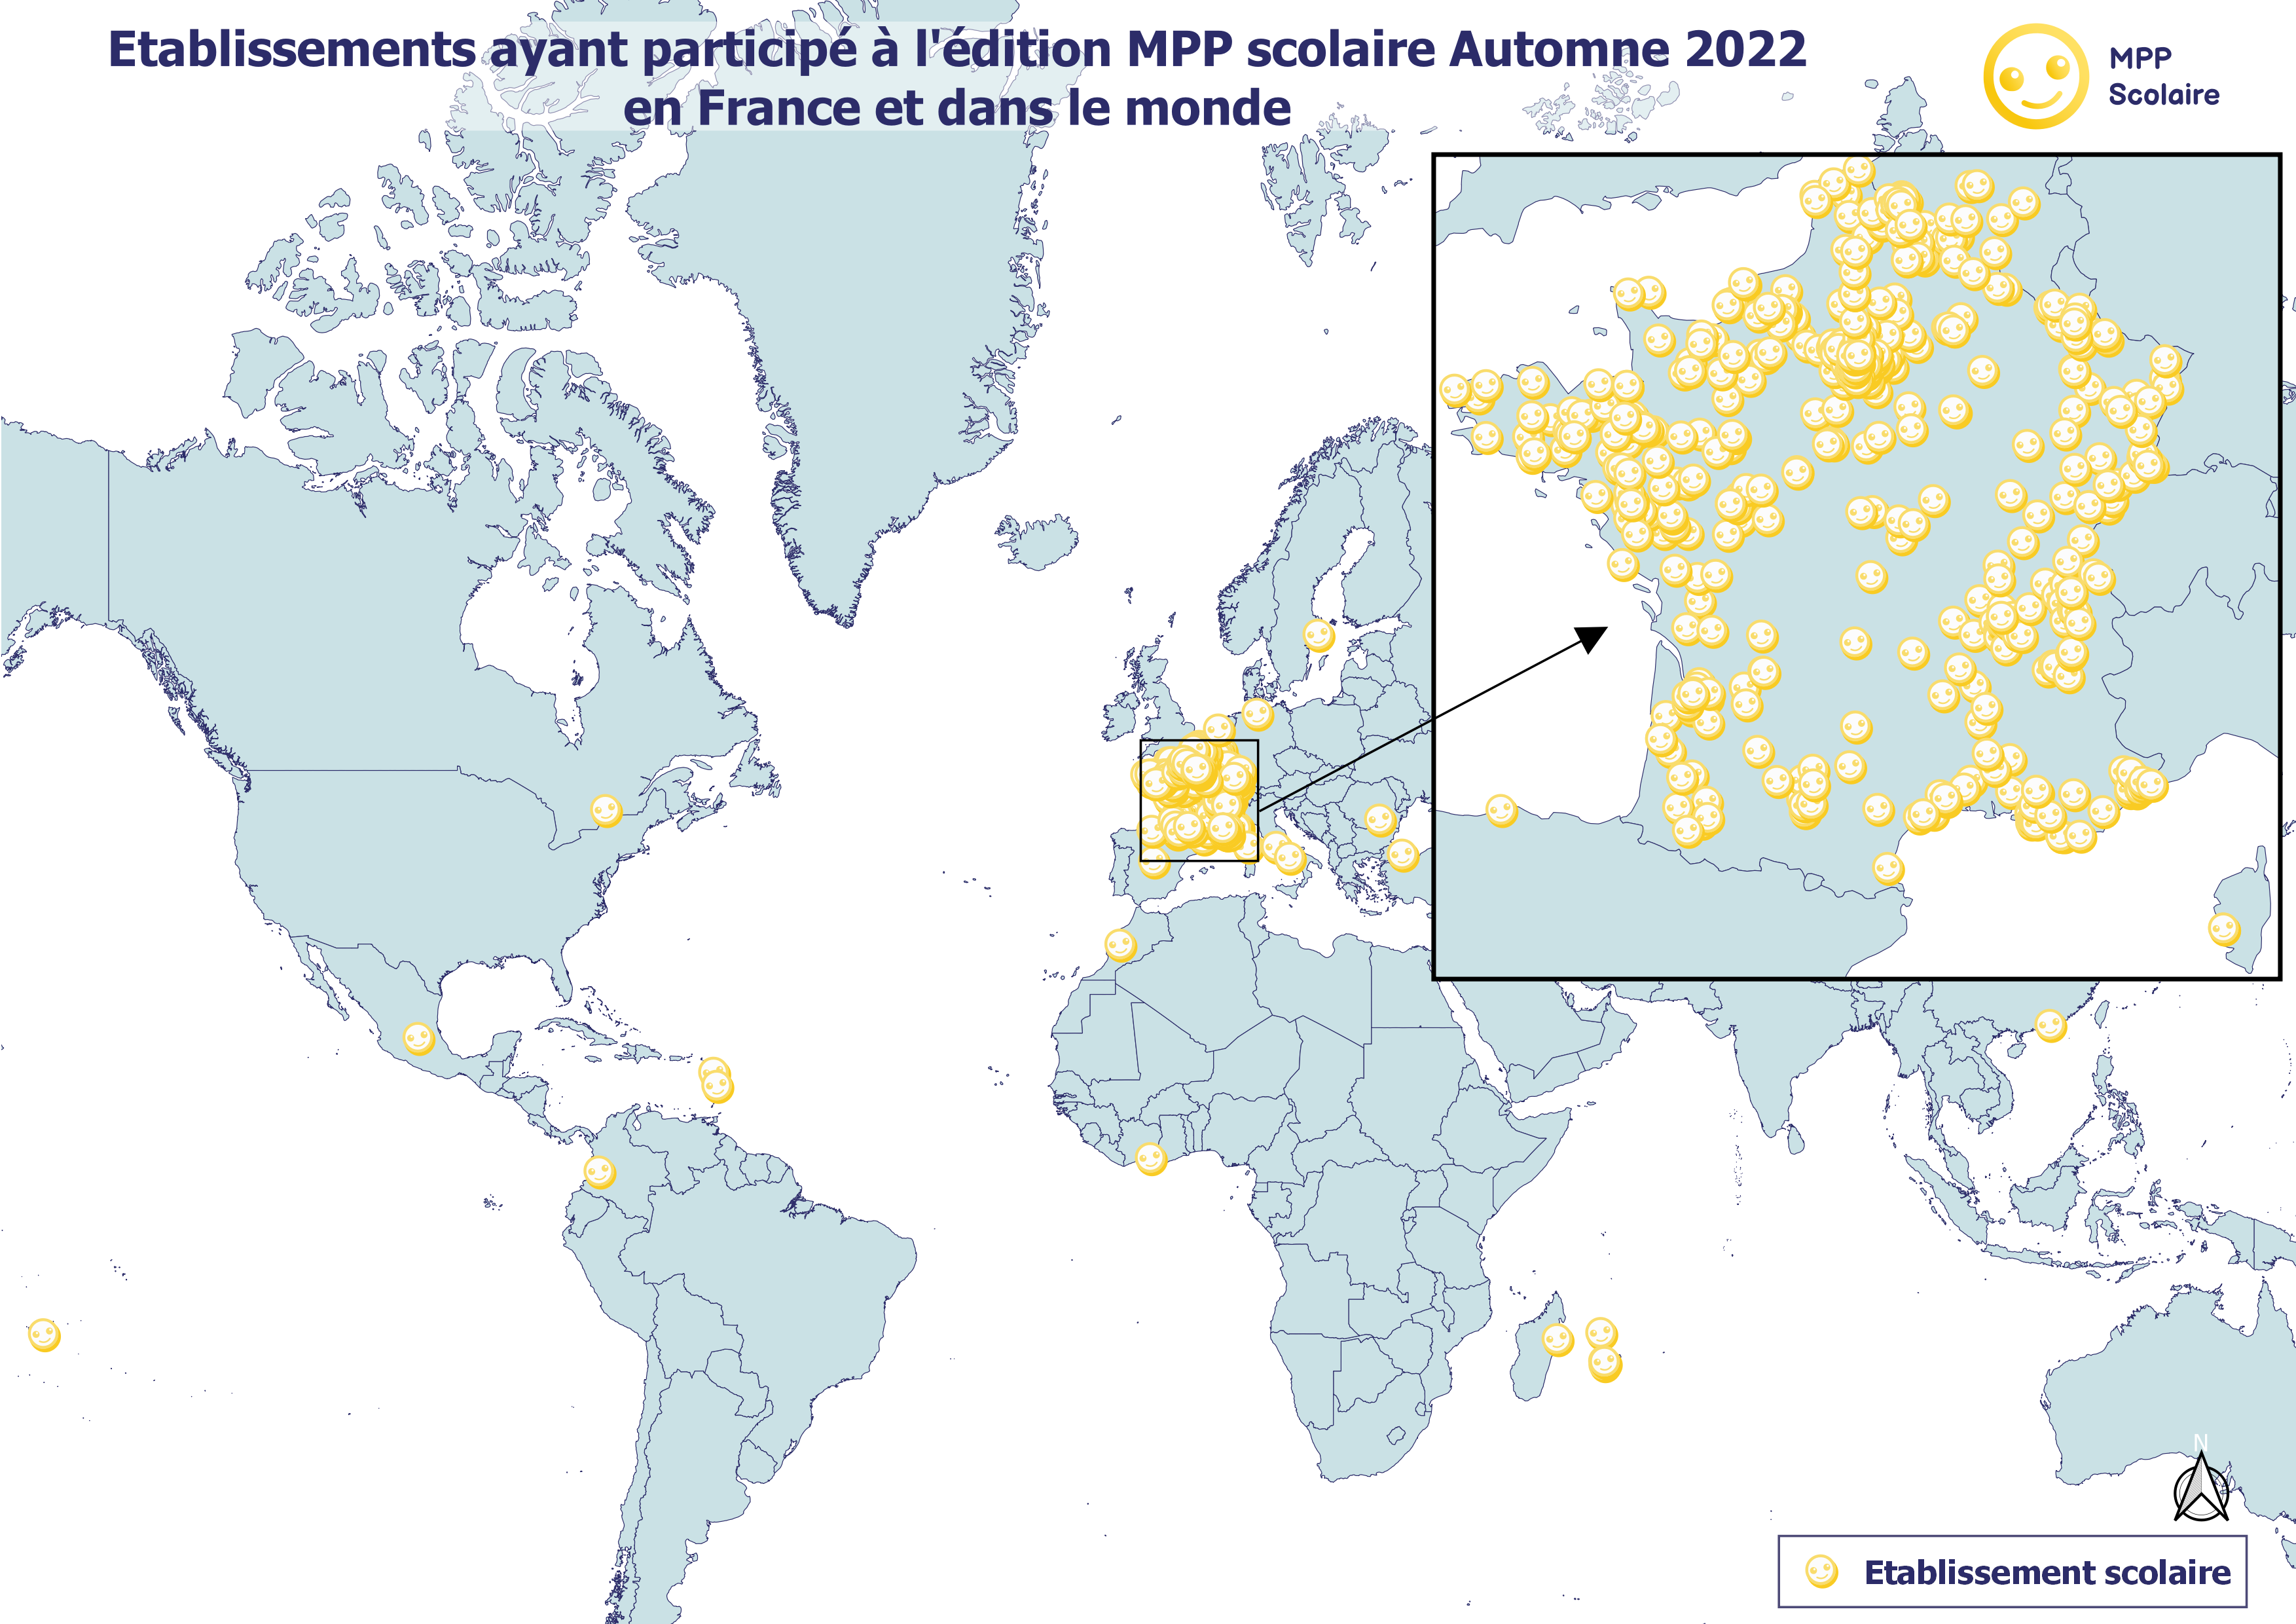 mapa del mundo donde se encuentran los estudiantes que juegan al MPP